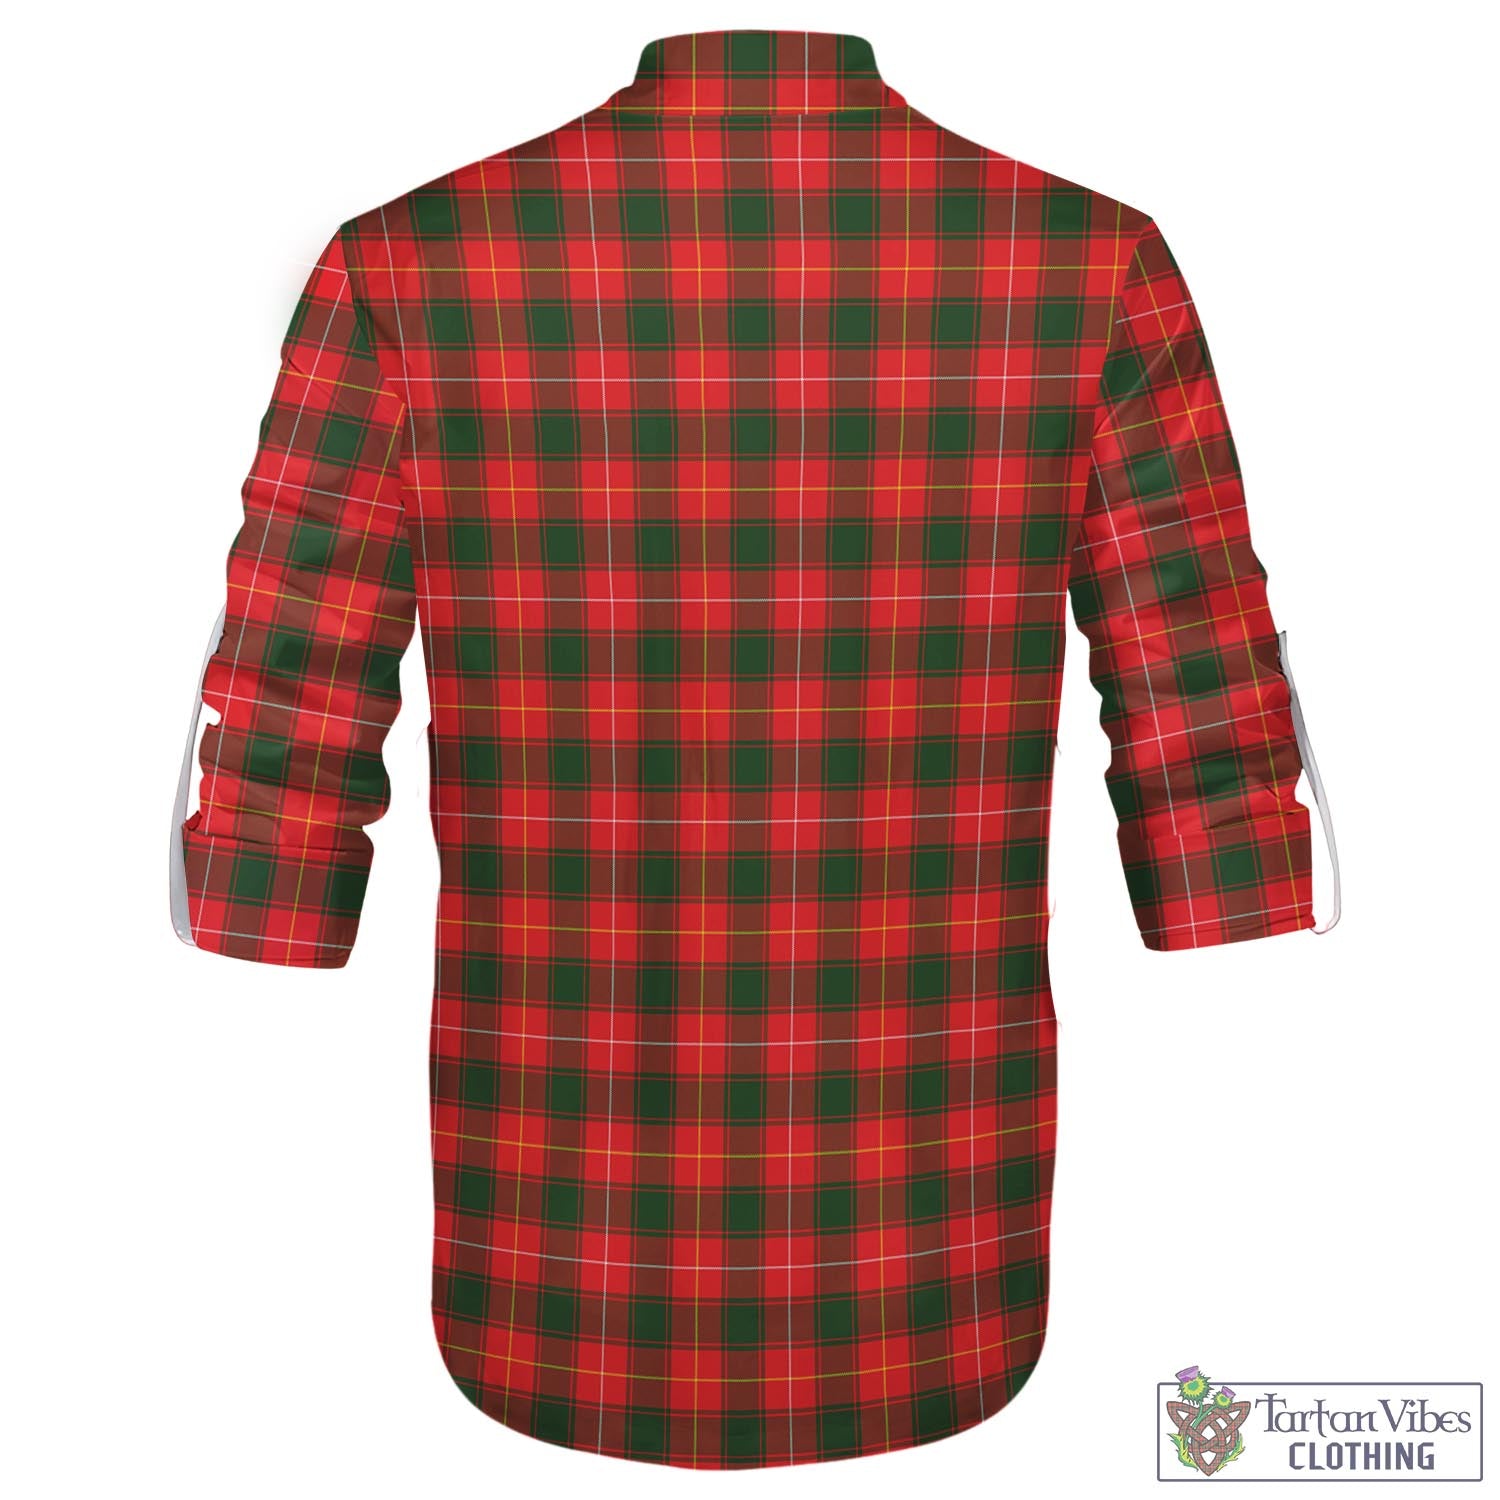 Tartan Vibes Clothing MacFie Modern Tartan Men's Scottish Traditional Jacobite Ghillie Kilt Shirt with Family Crest